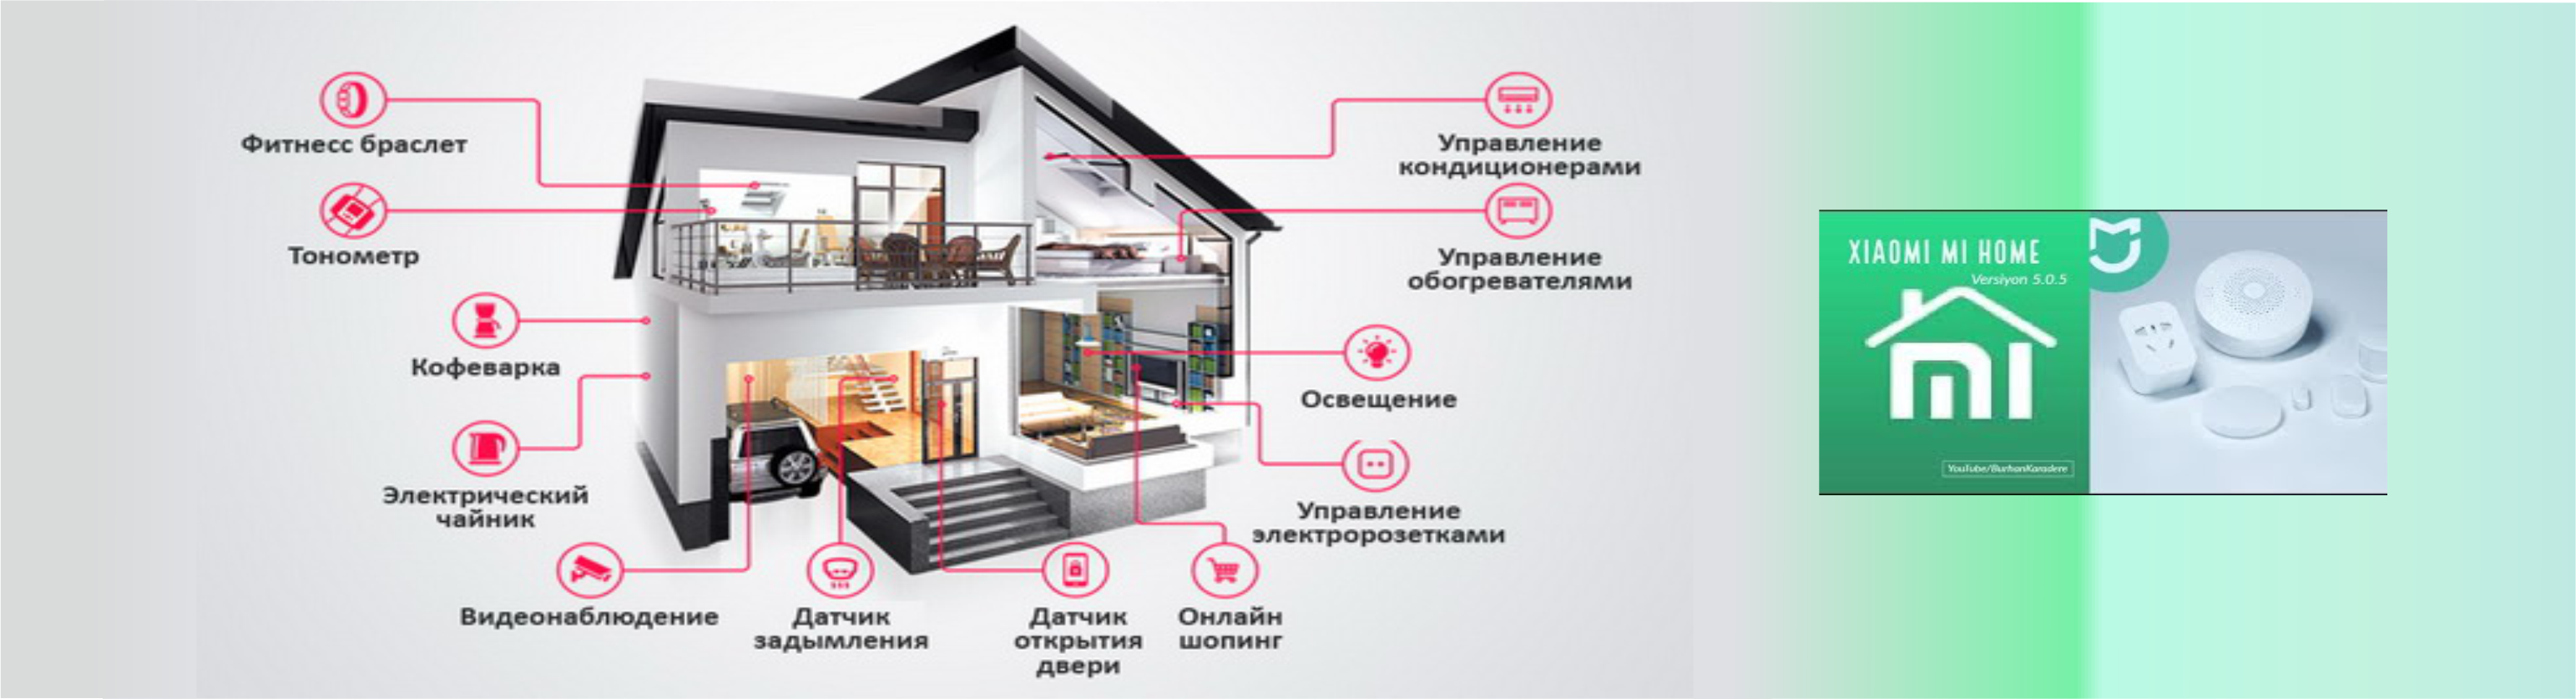 Управление вентиляцией в умном доме. Название для компании умного дома. Схема установки умный дом. Название для умного дома.